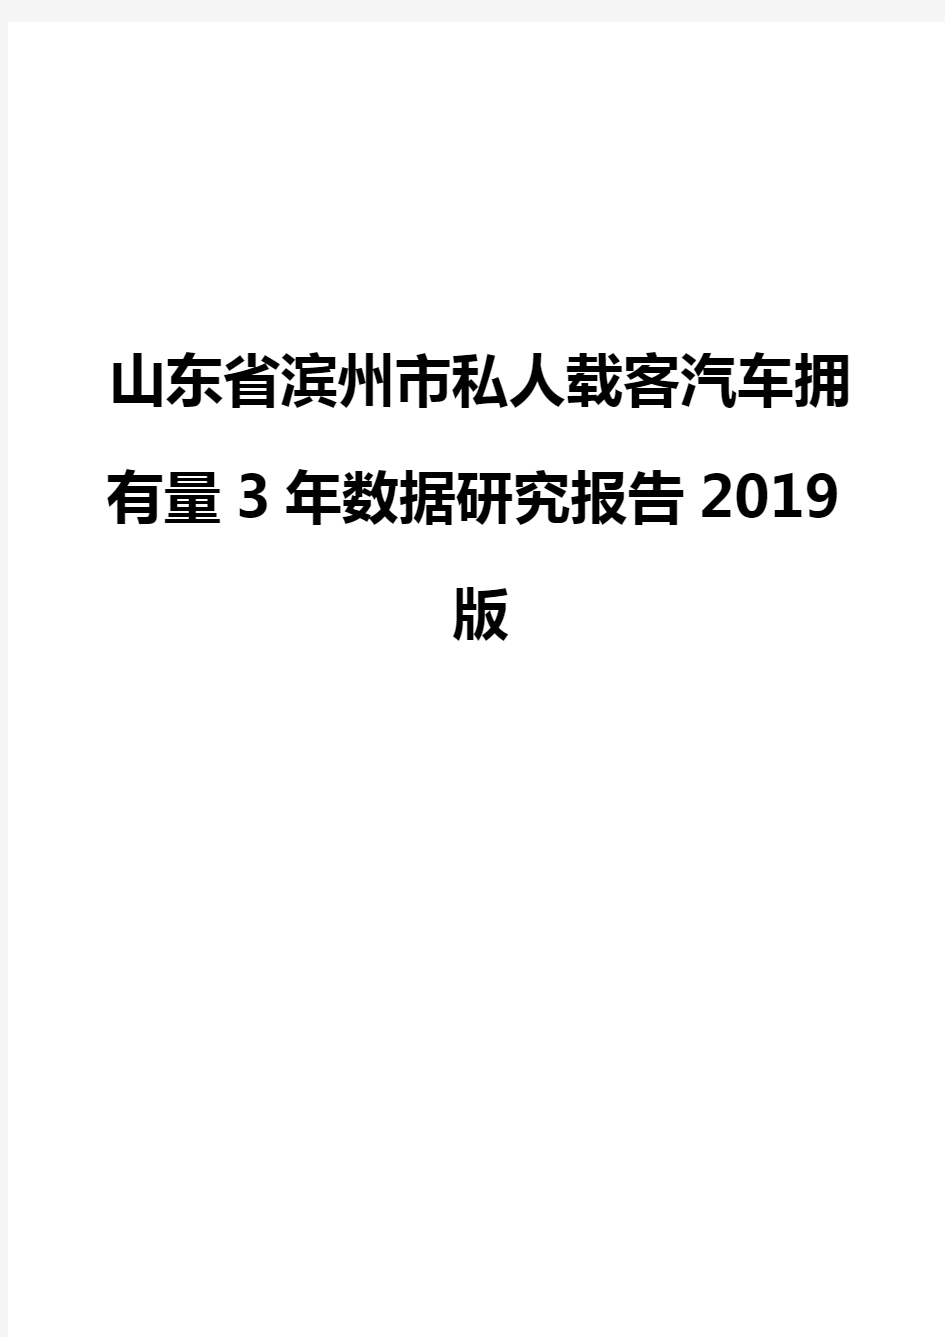 山东省滨州市私人载客汽车拥有量3年数据研究报告2019版